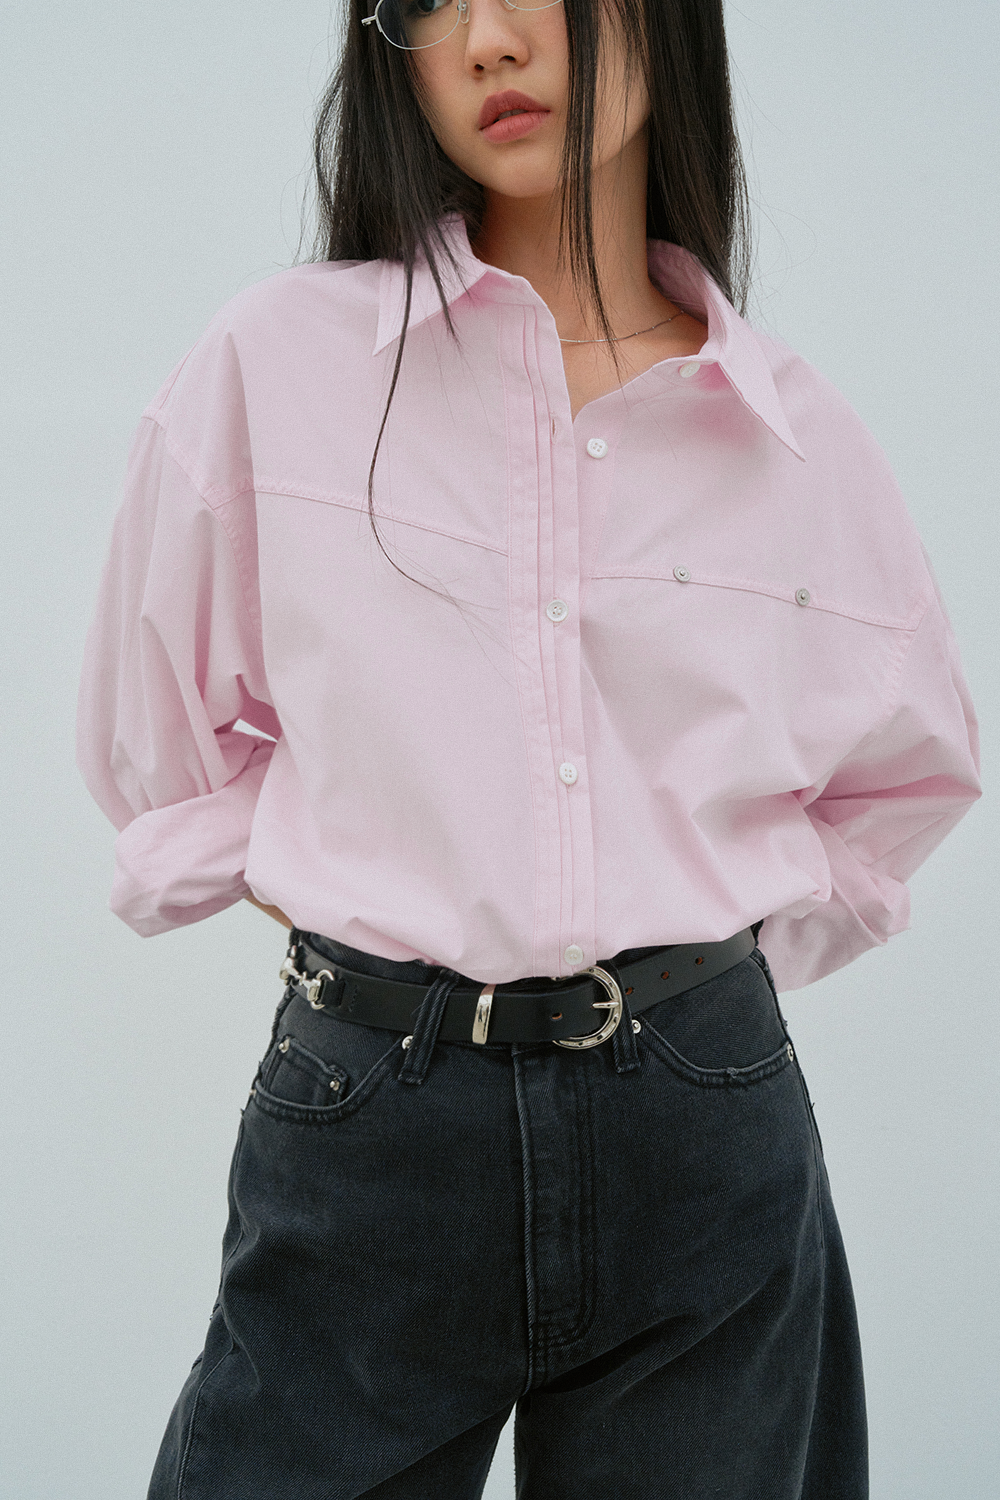 Garment Shirt (Pink) 3차 오픈 4/30일 순차발송